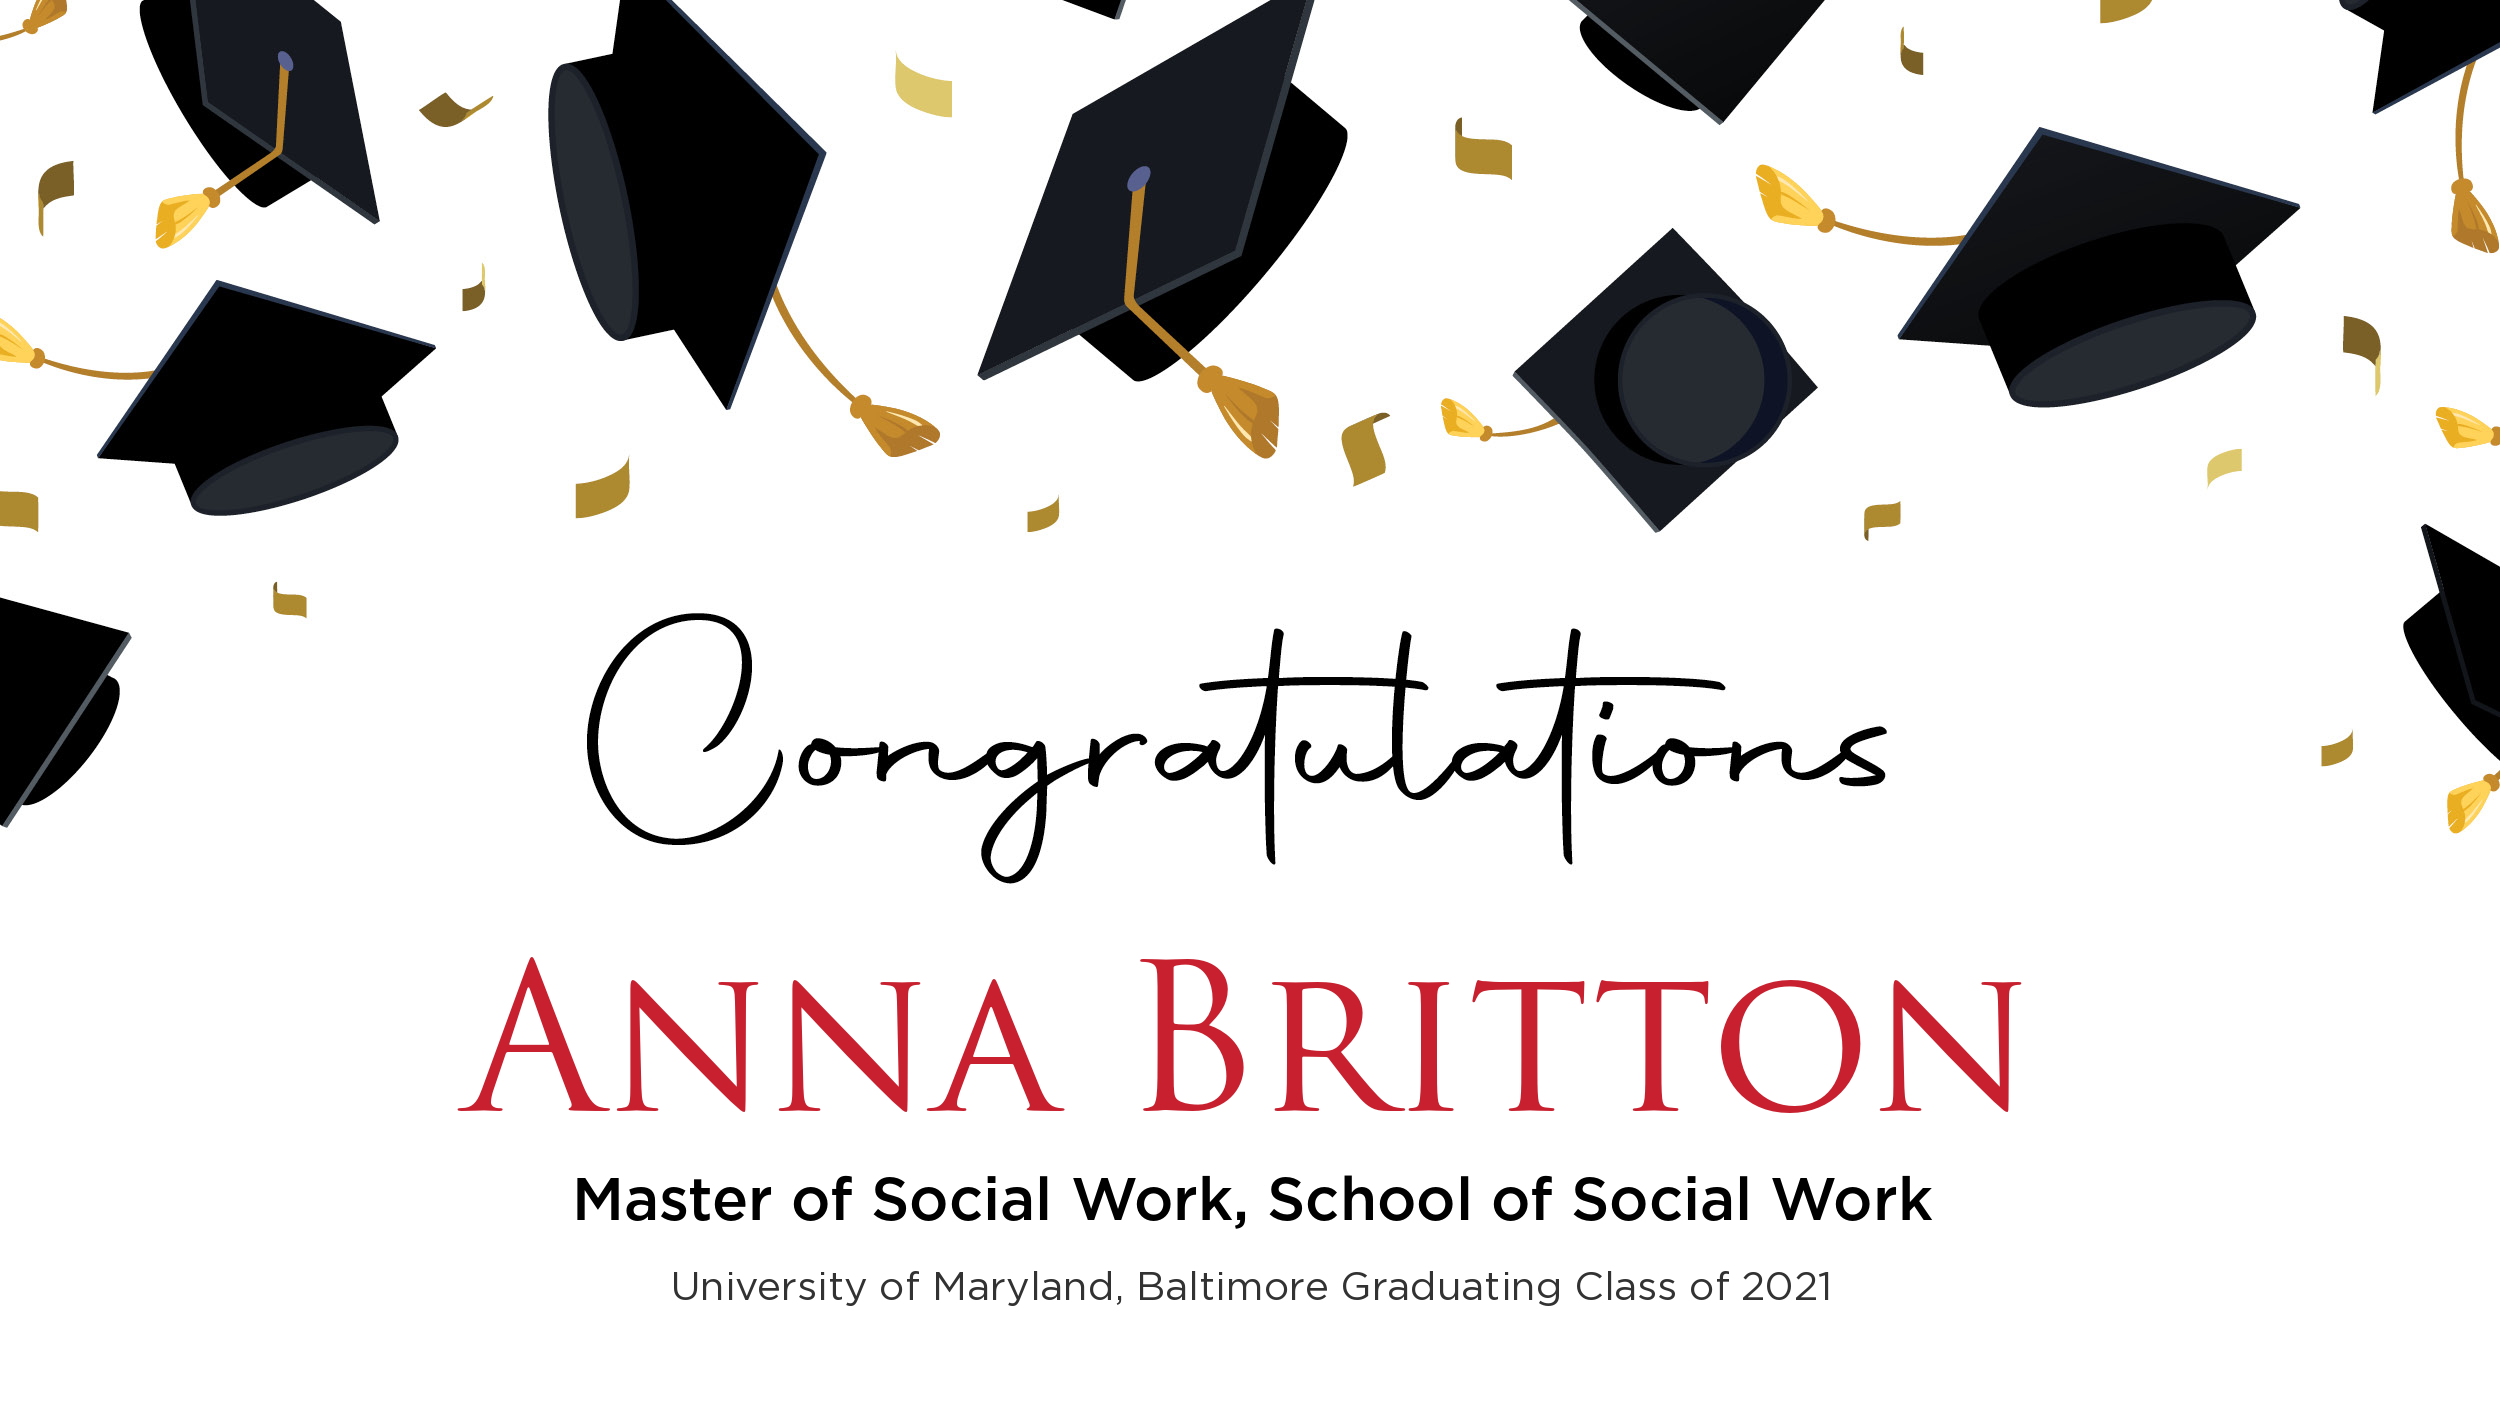 Congratulations Anna Britton, Master of Social Work